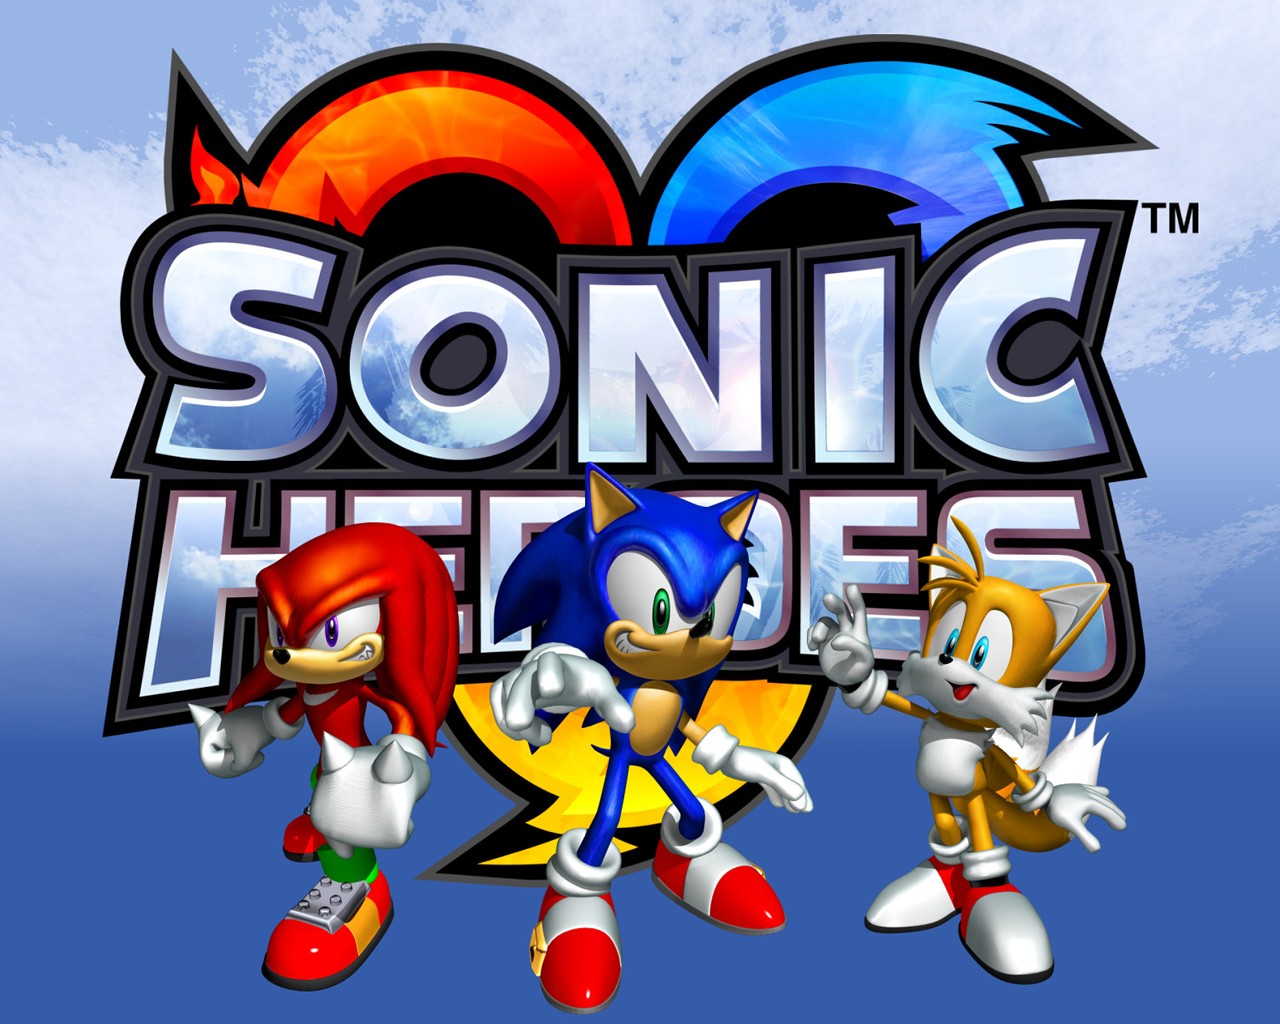 "Sonic Heroes" desktop wallpaper 3 (1280 x 1024 pixels)